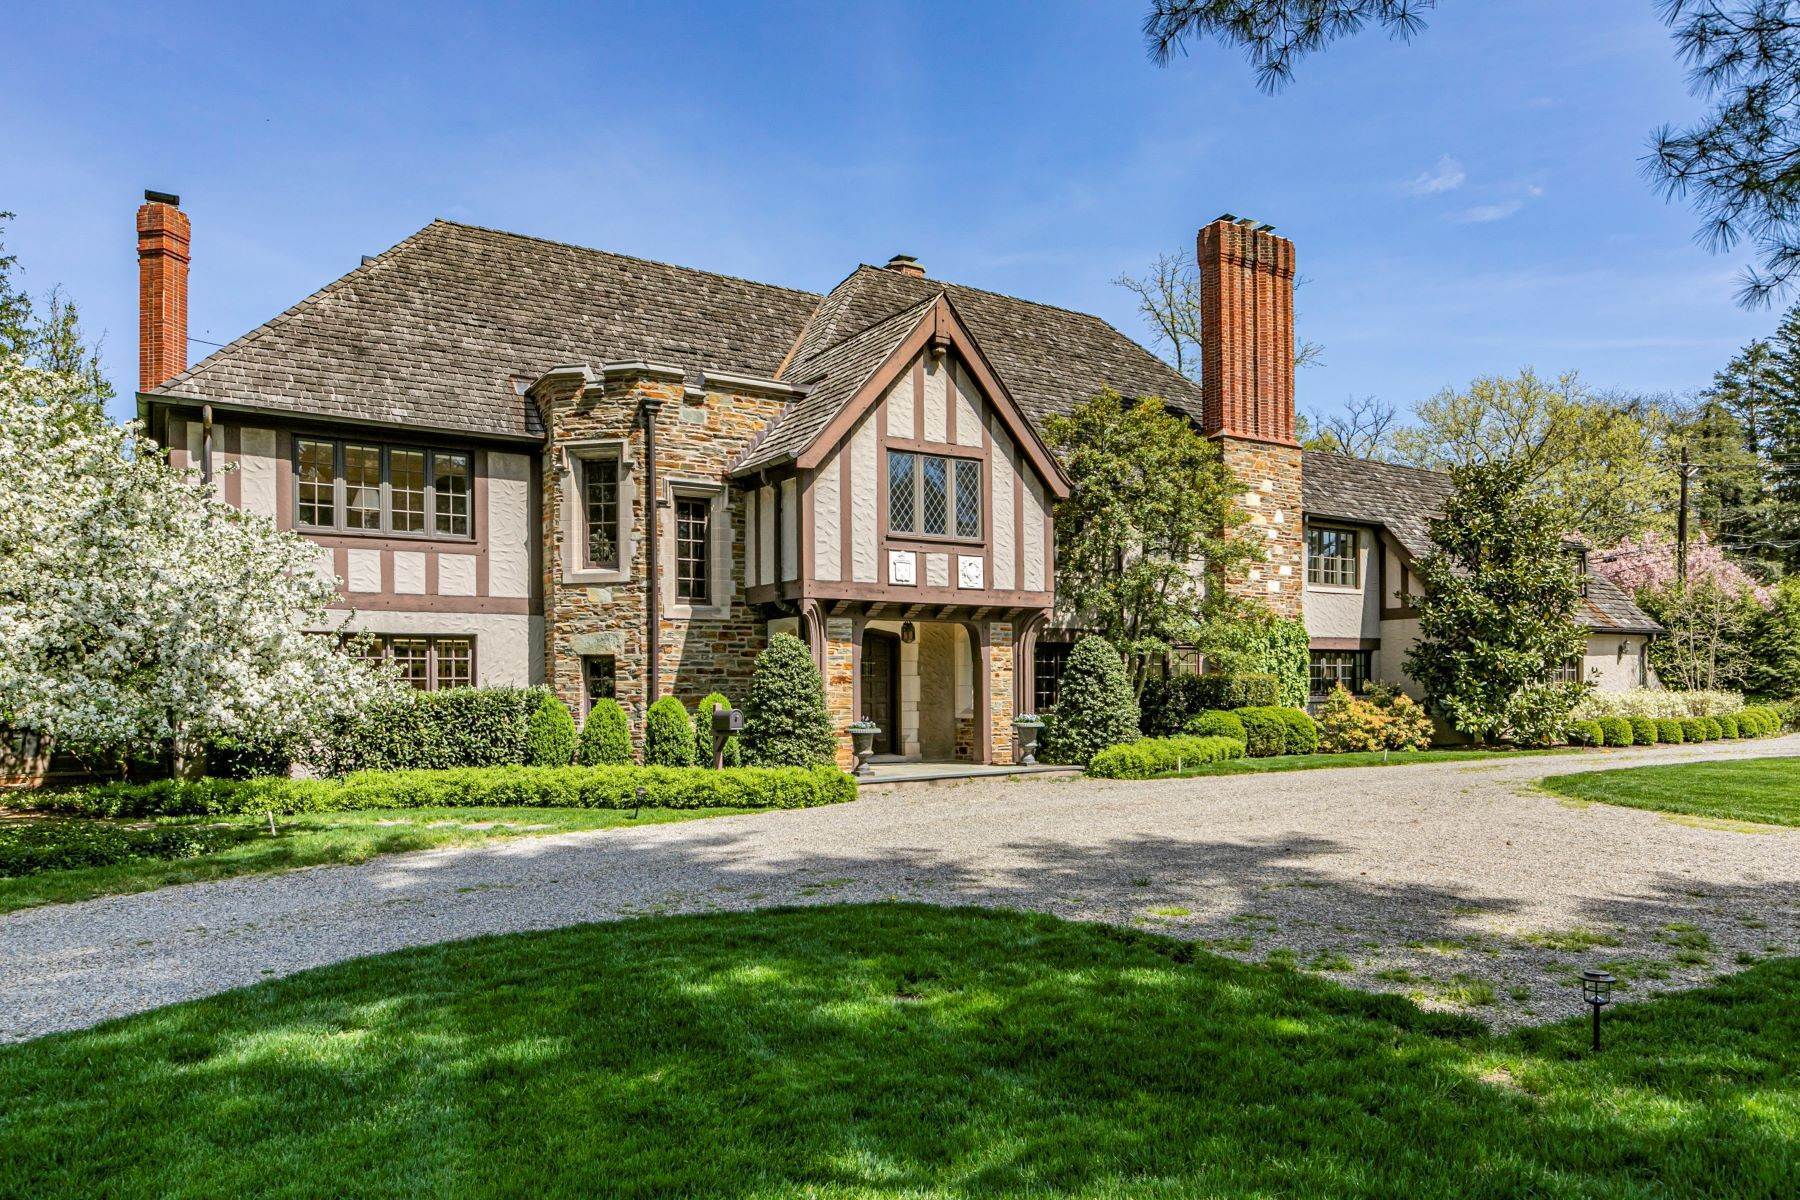 Property для того Продажа на Stunning Tudor in the Esteemed Western Section 193 Elm Road, Princeton, Нью-Джерси 08540 Соединенные Штаты